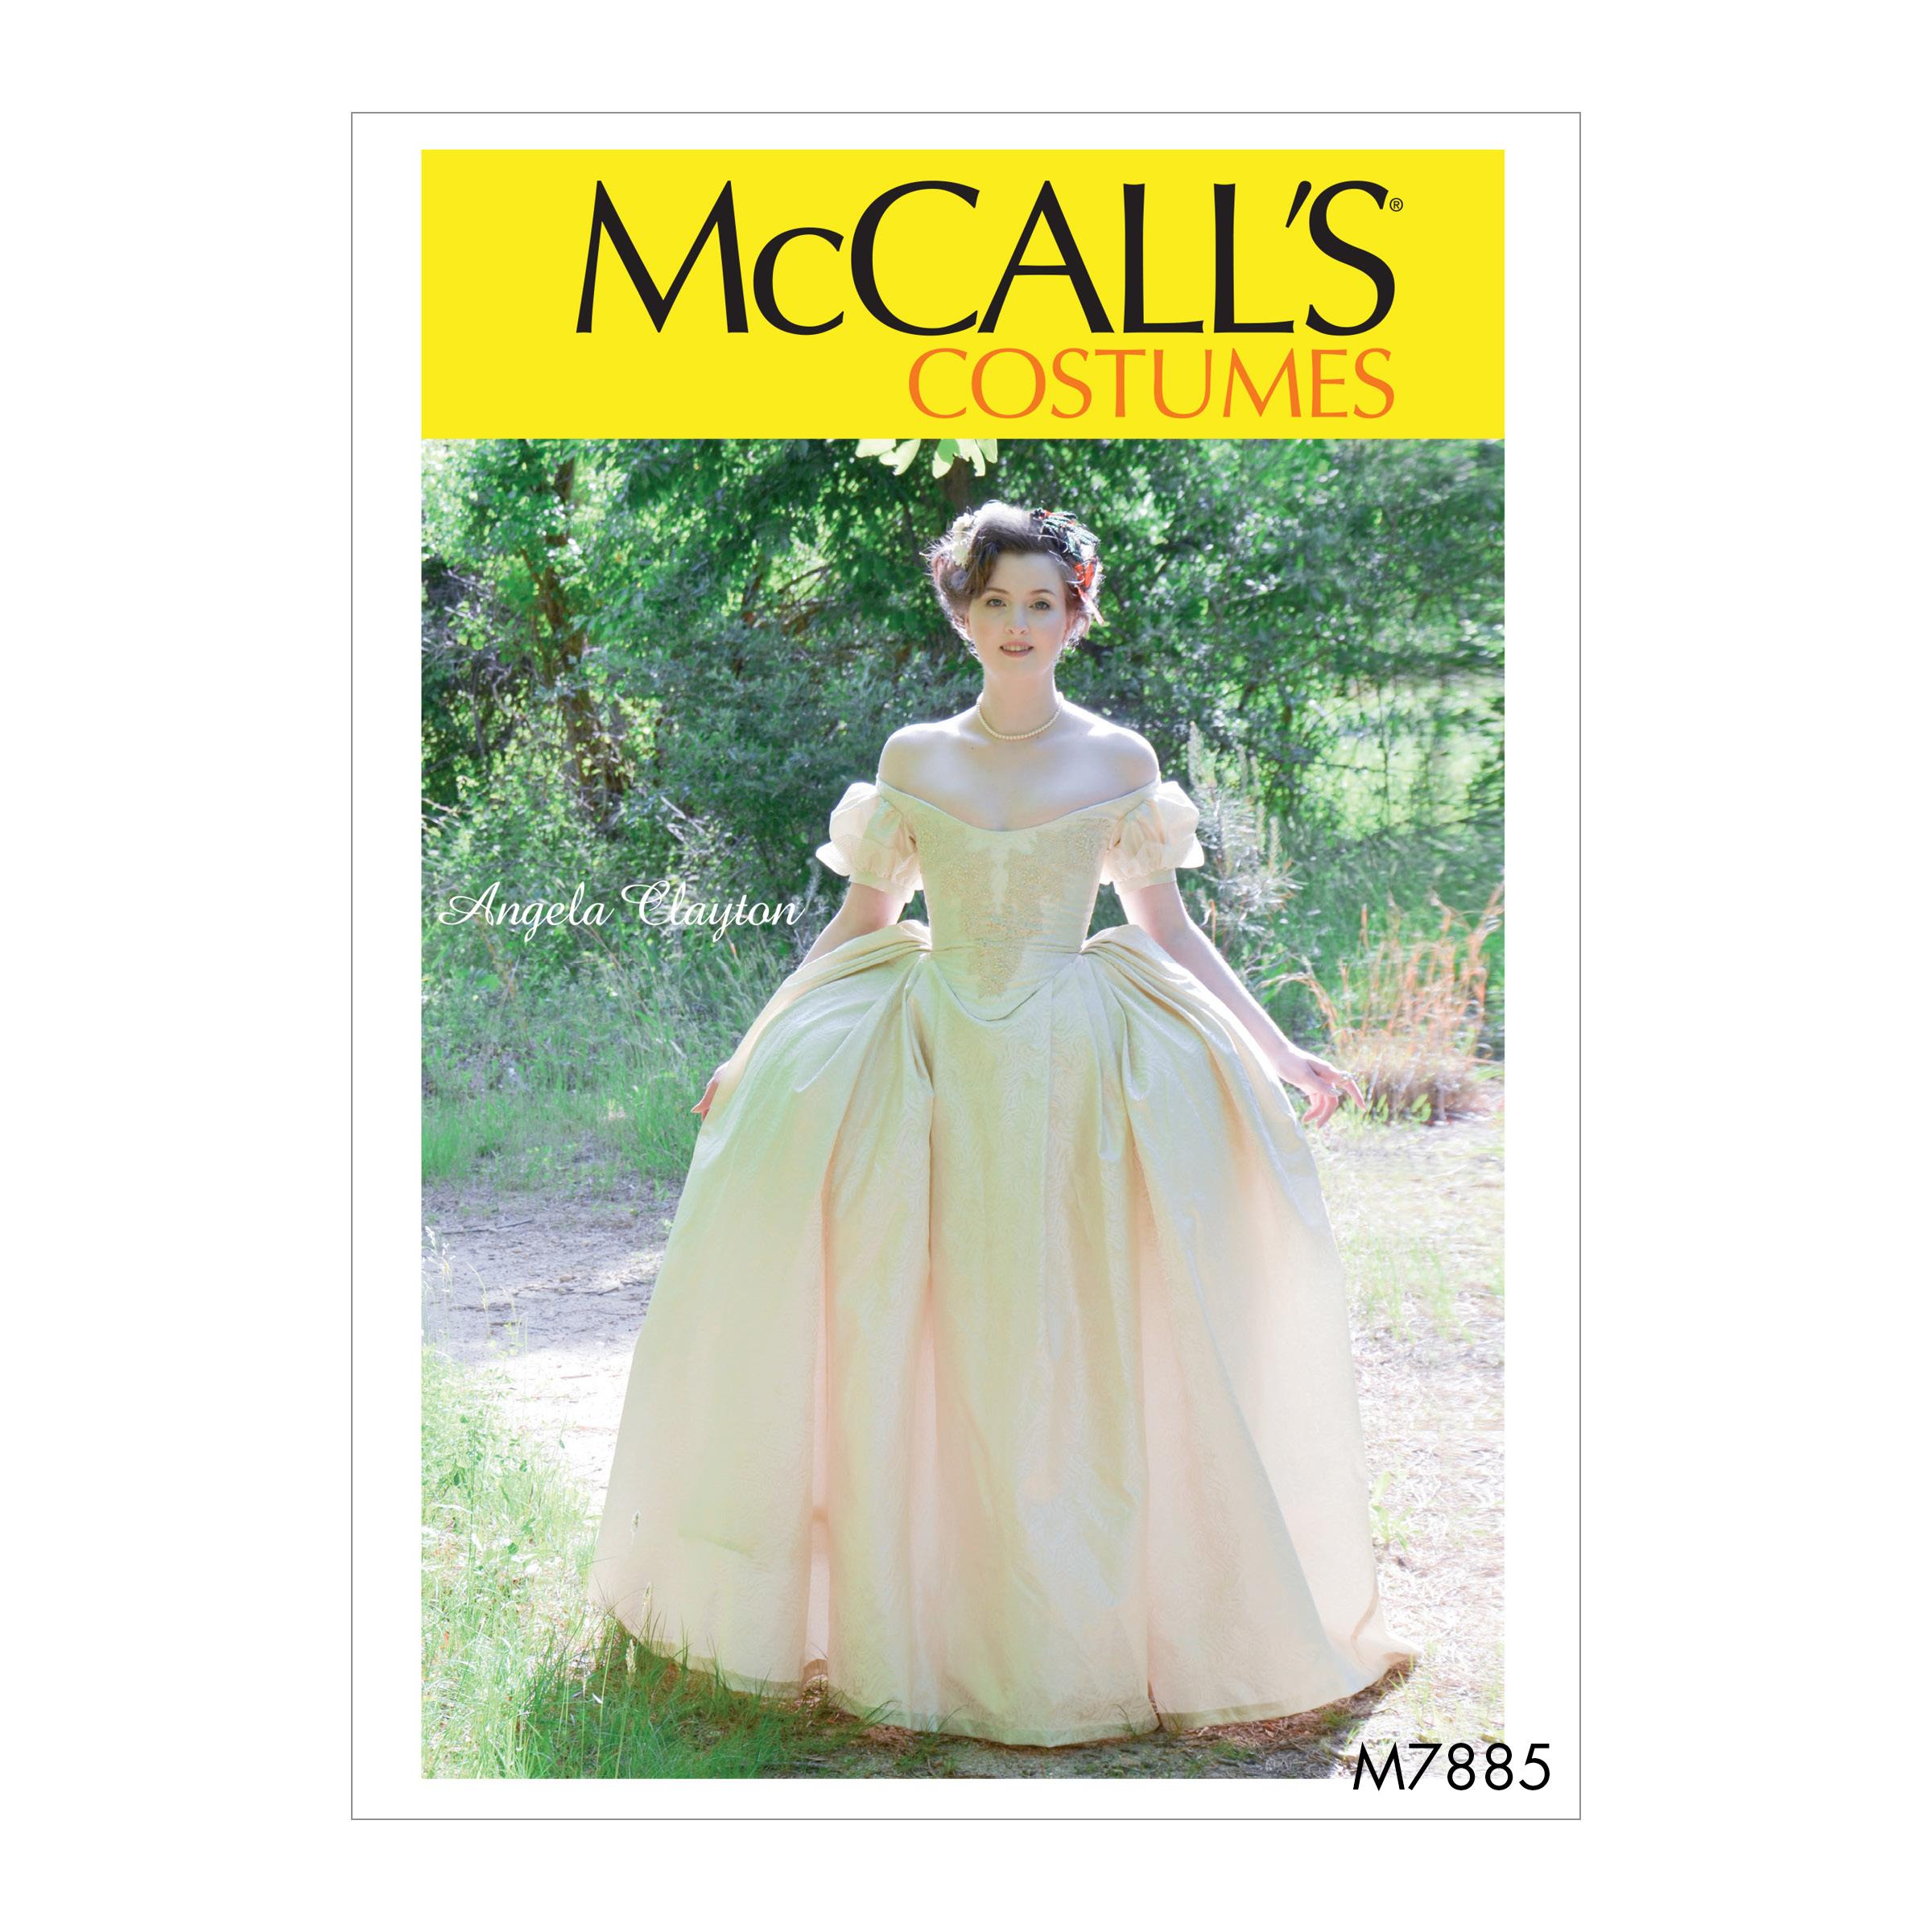 McCalls M7885 Costumes